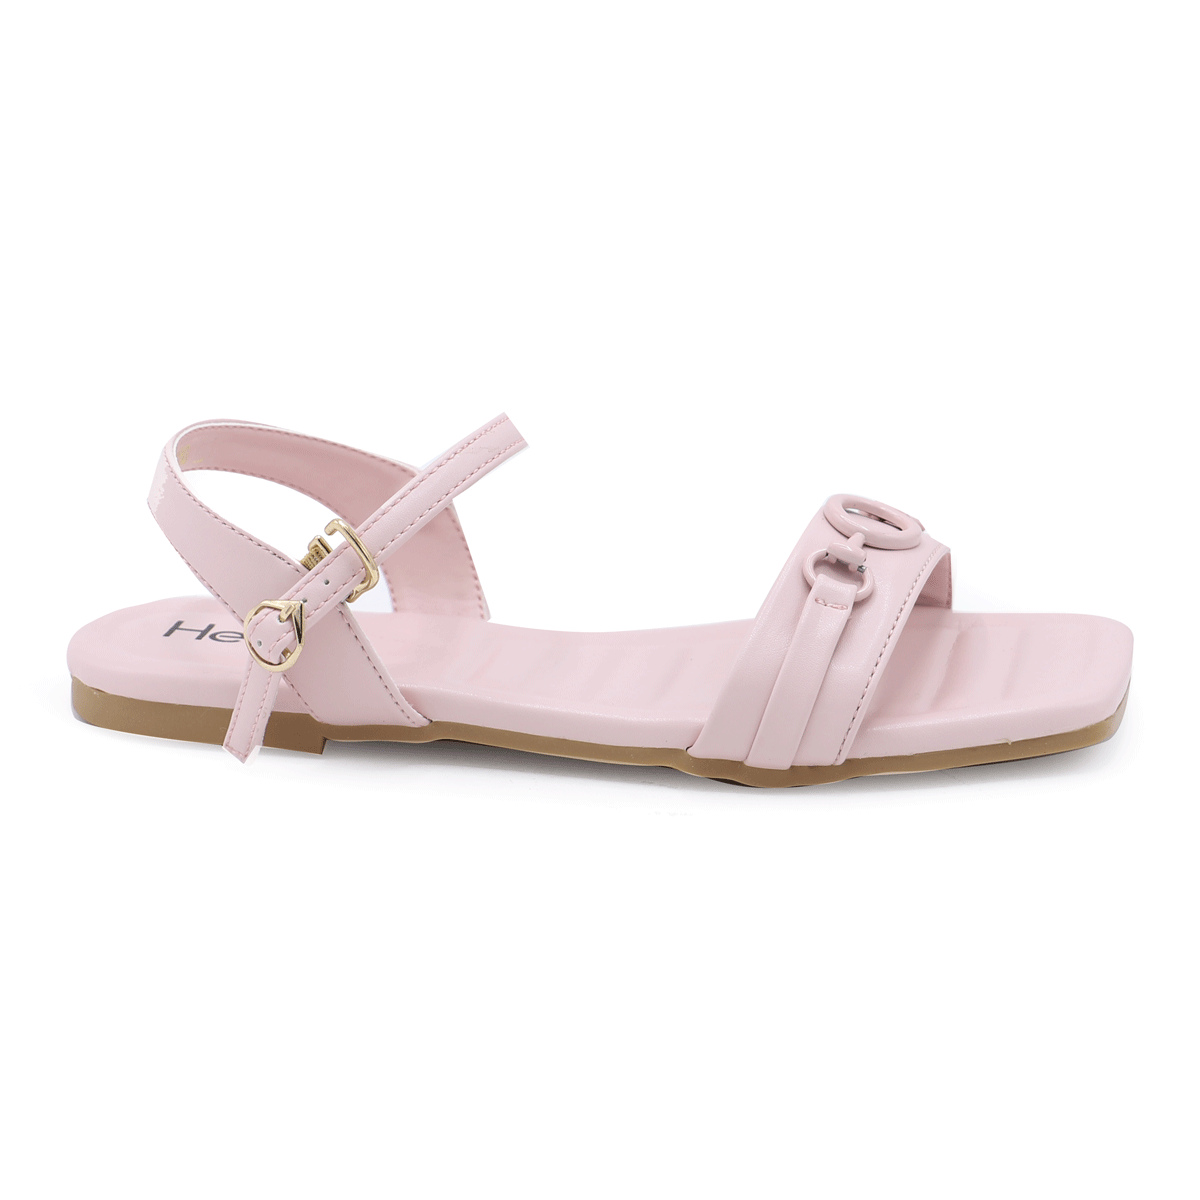 T-Pink Formal Sandal 050180